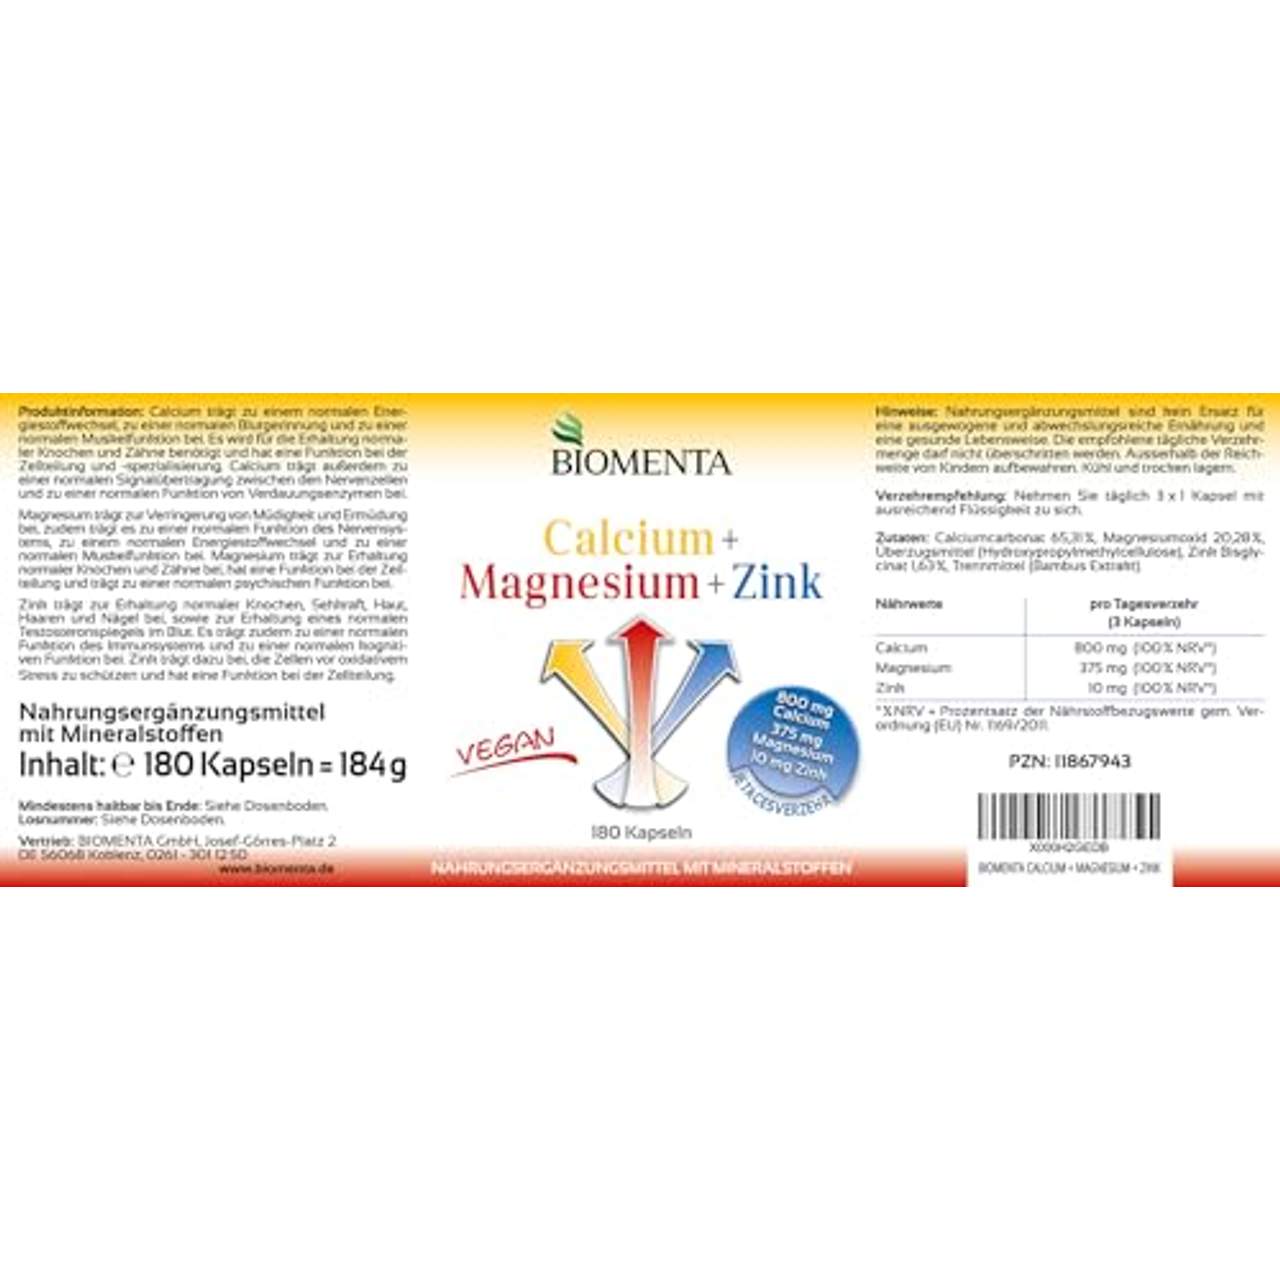 BIOMENTA Calcium Magnesium Zink